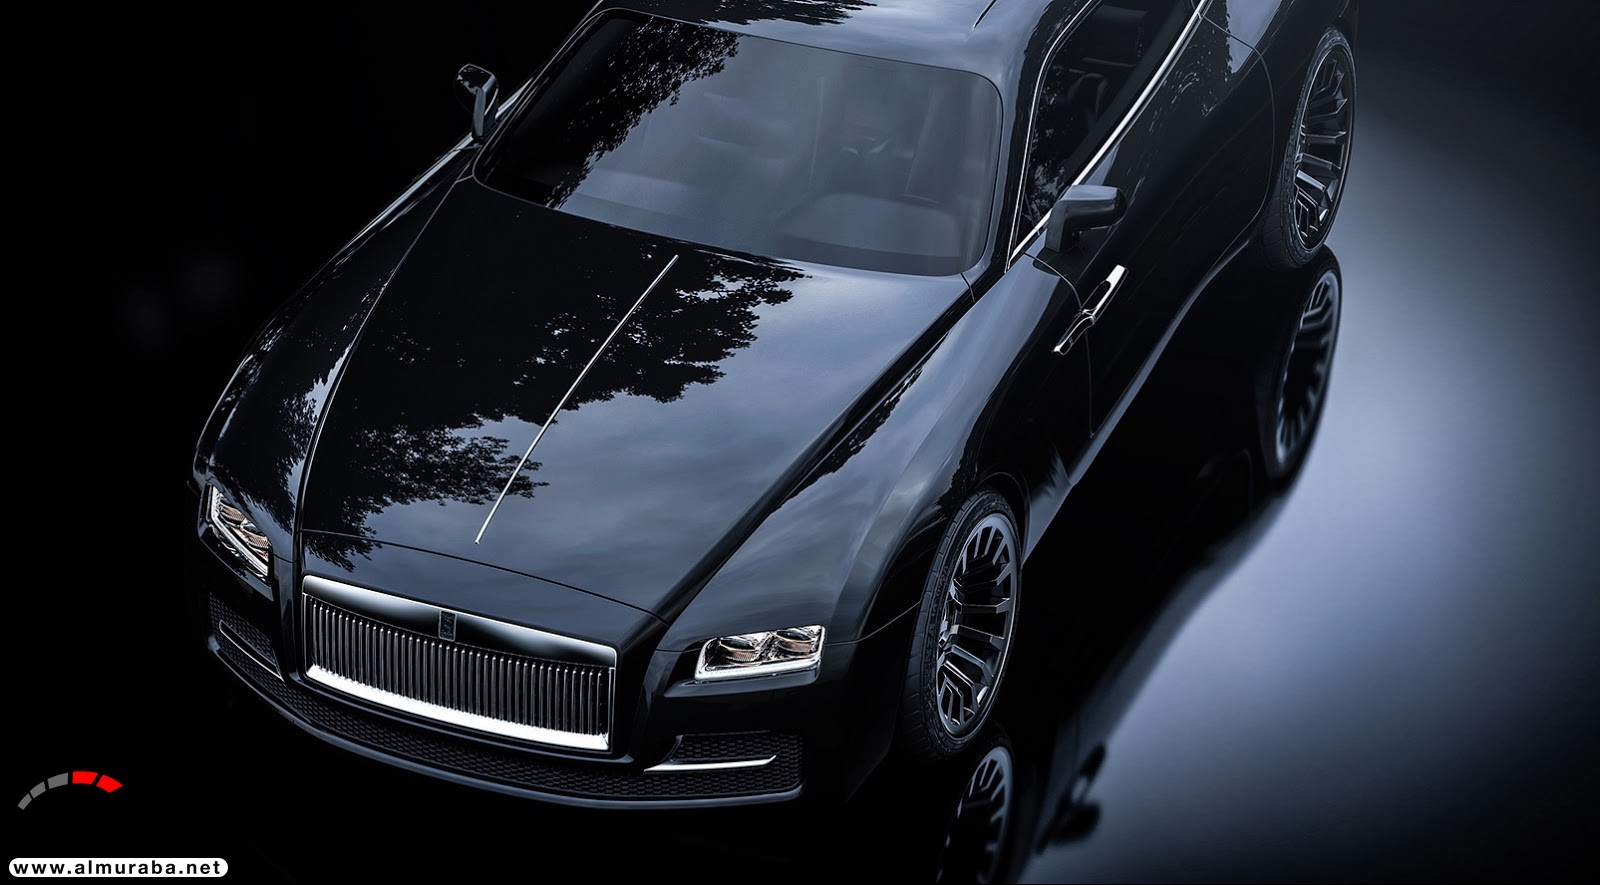 "صور افتراضية" لما يمكن أن تبدو عليه "رولز رويس" رايث كوبيه 2020 Rolls-Royce Wraith Coupe 67